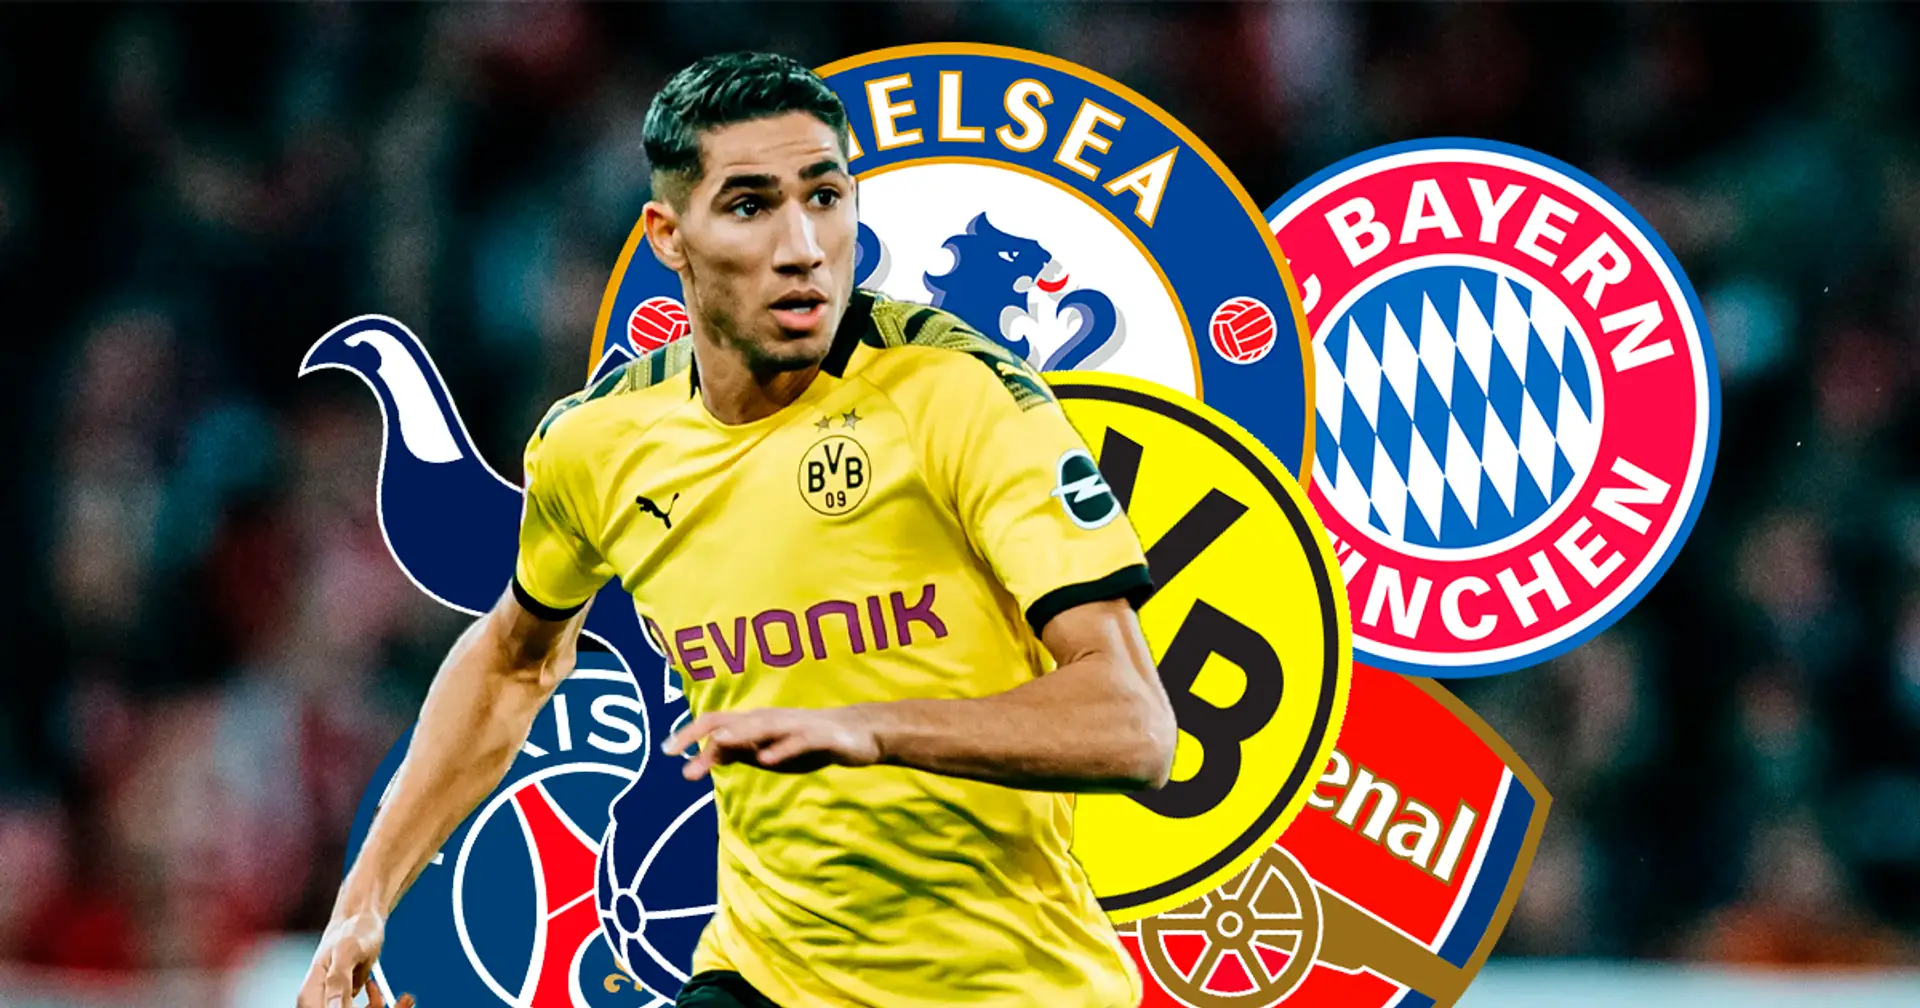 Mundo Deportivo: Bayern soll mit 6 weiteren Top-Clubs um Achraf Hakimi kämpfen